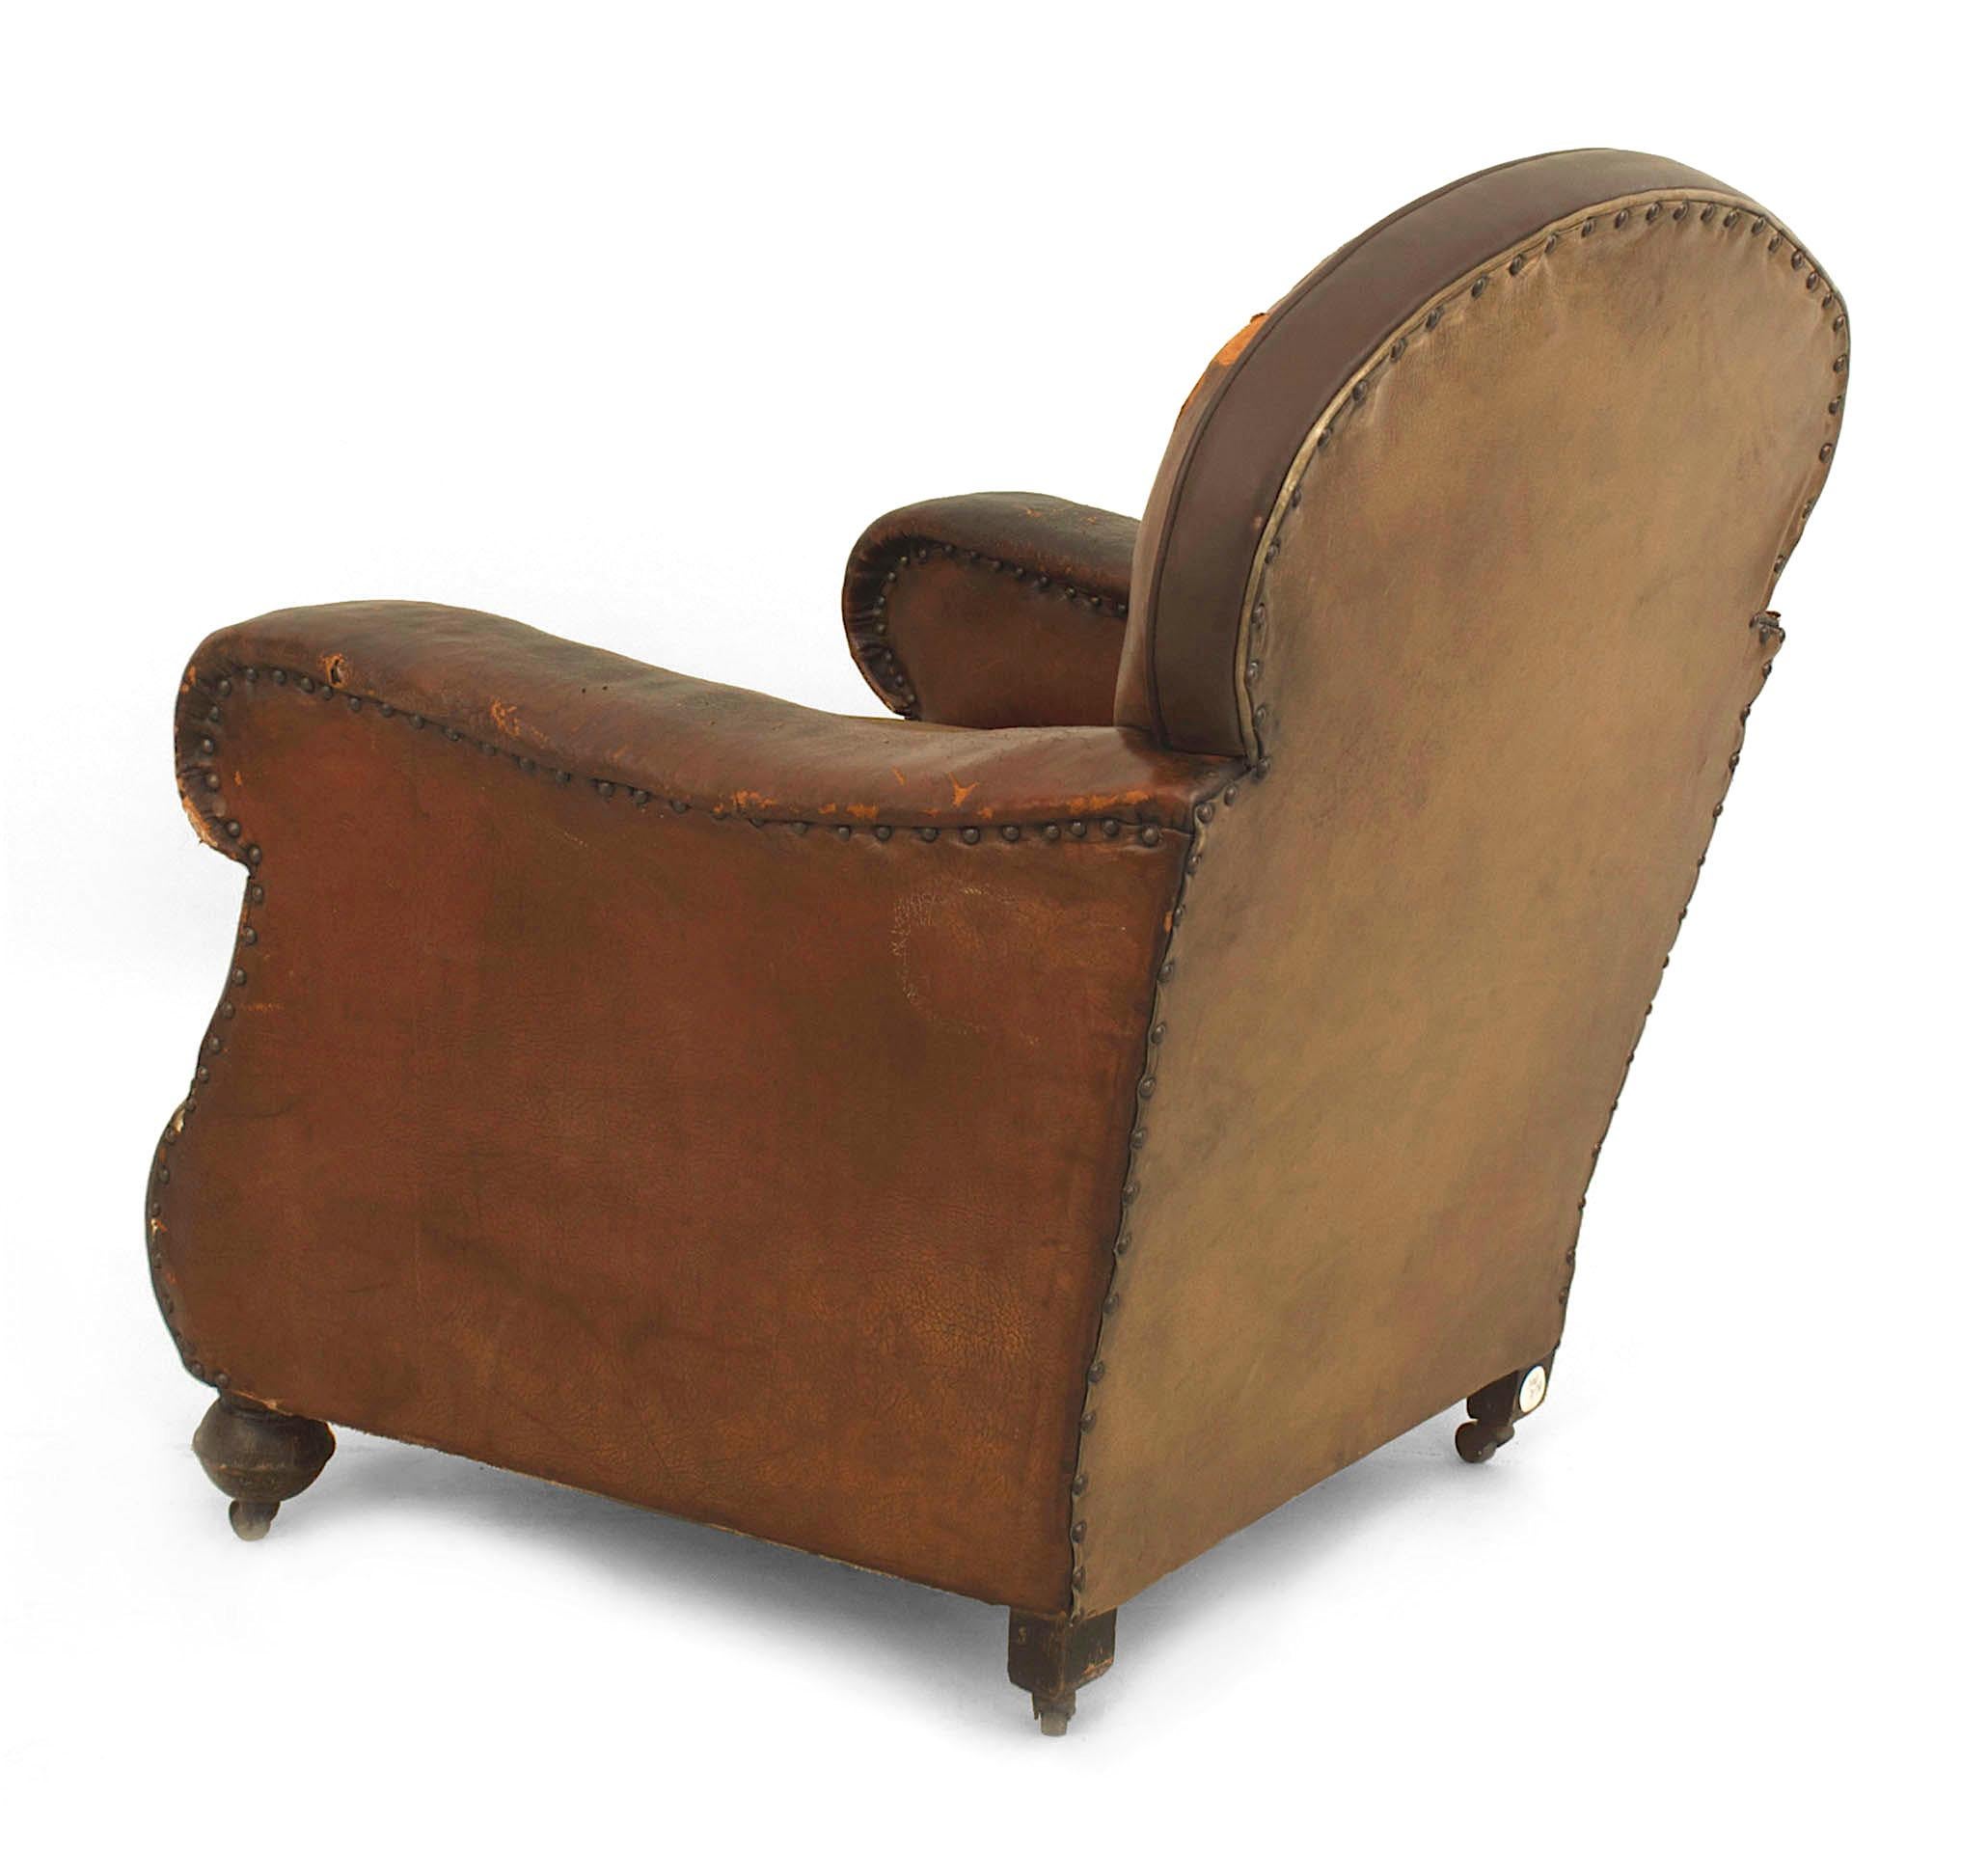 19th century club chair